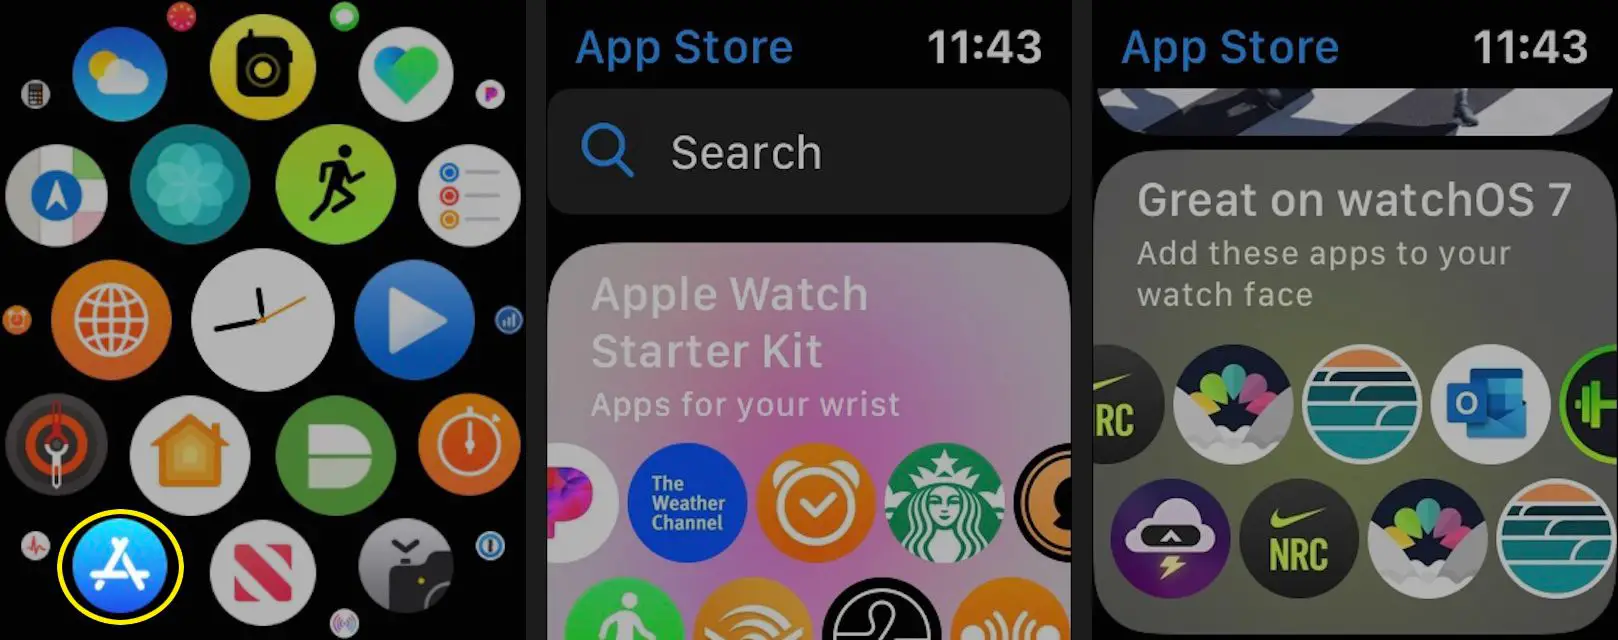 Abra a App Store no seu Apple Watch para ver os aplicativos em destaque